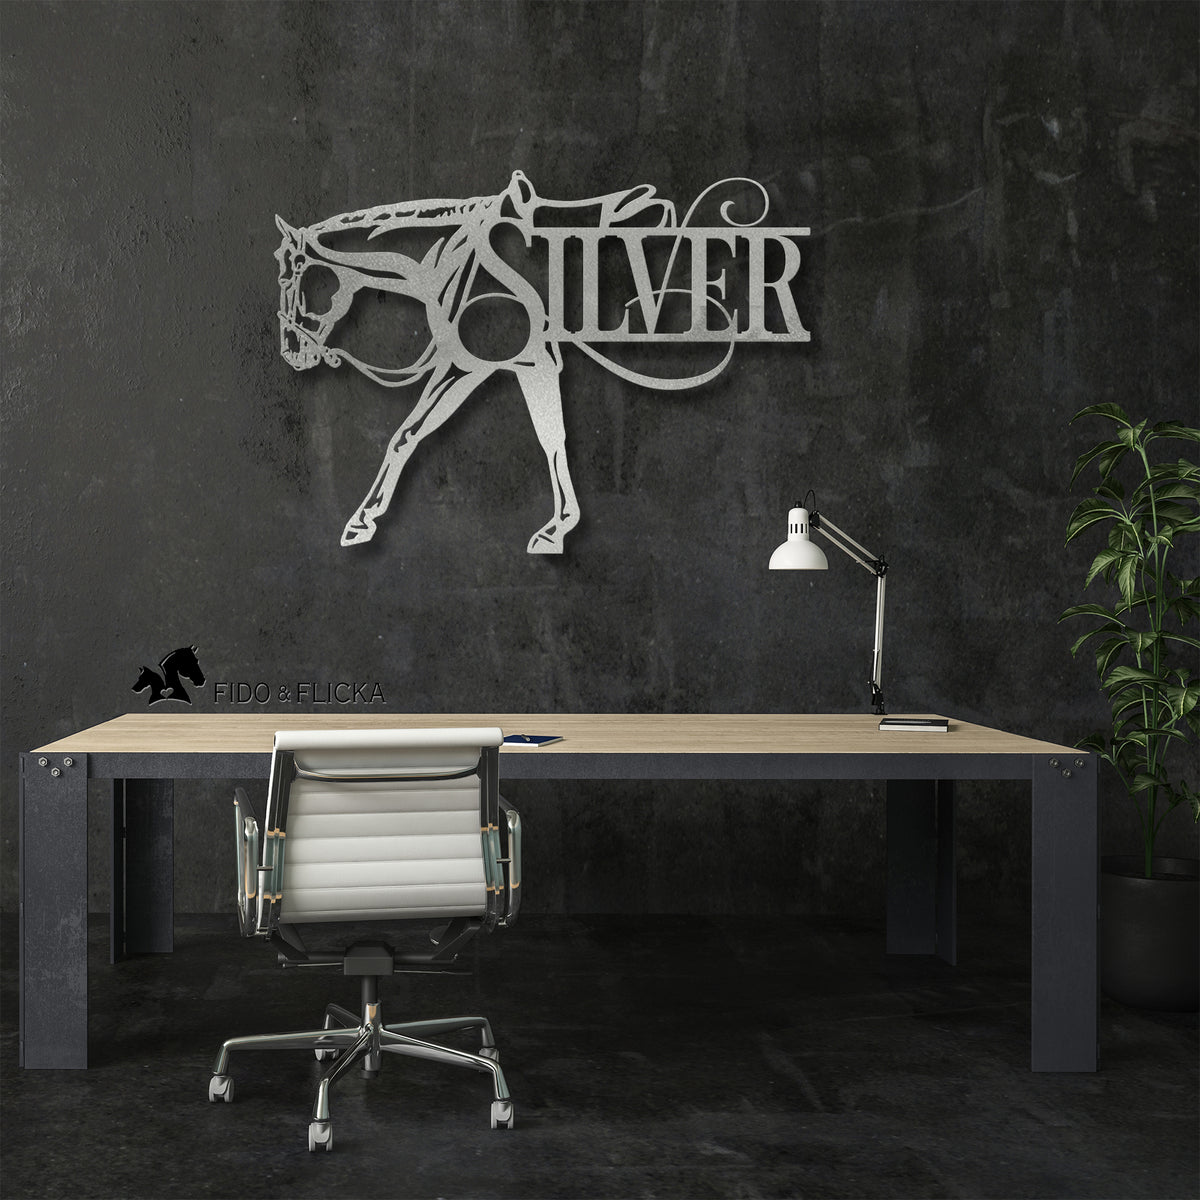 silver western pleasure horse metal wall art on dark wall in office